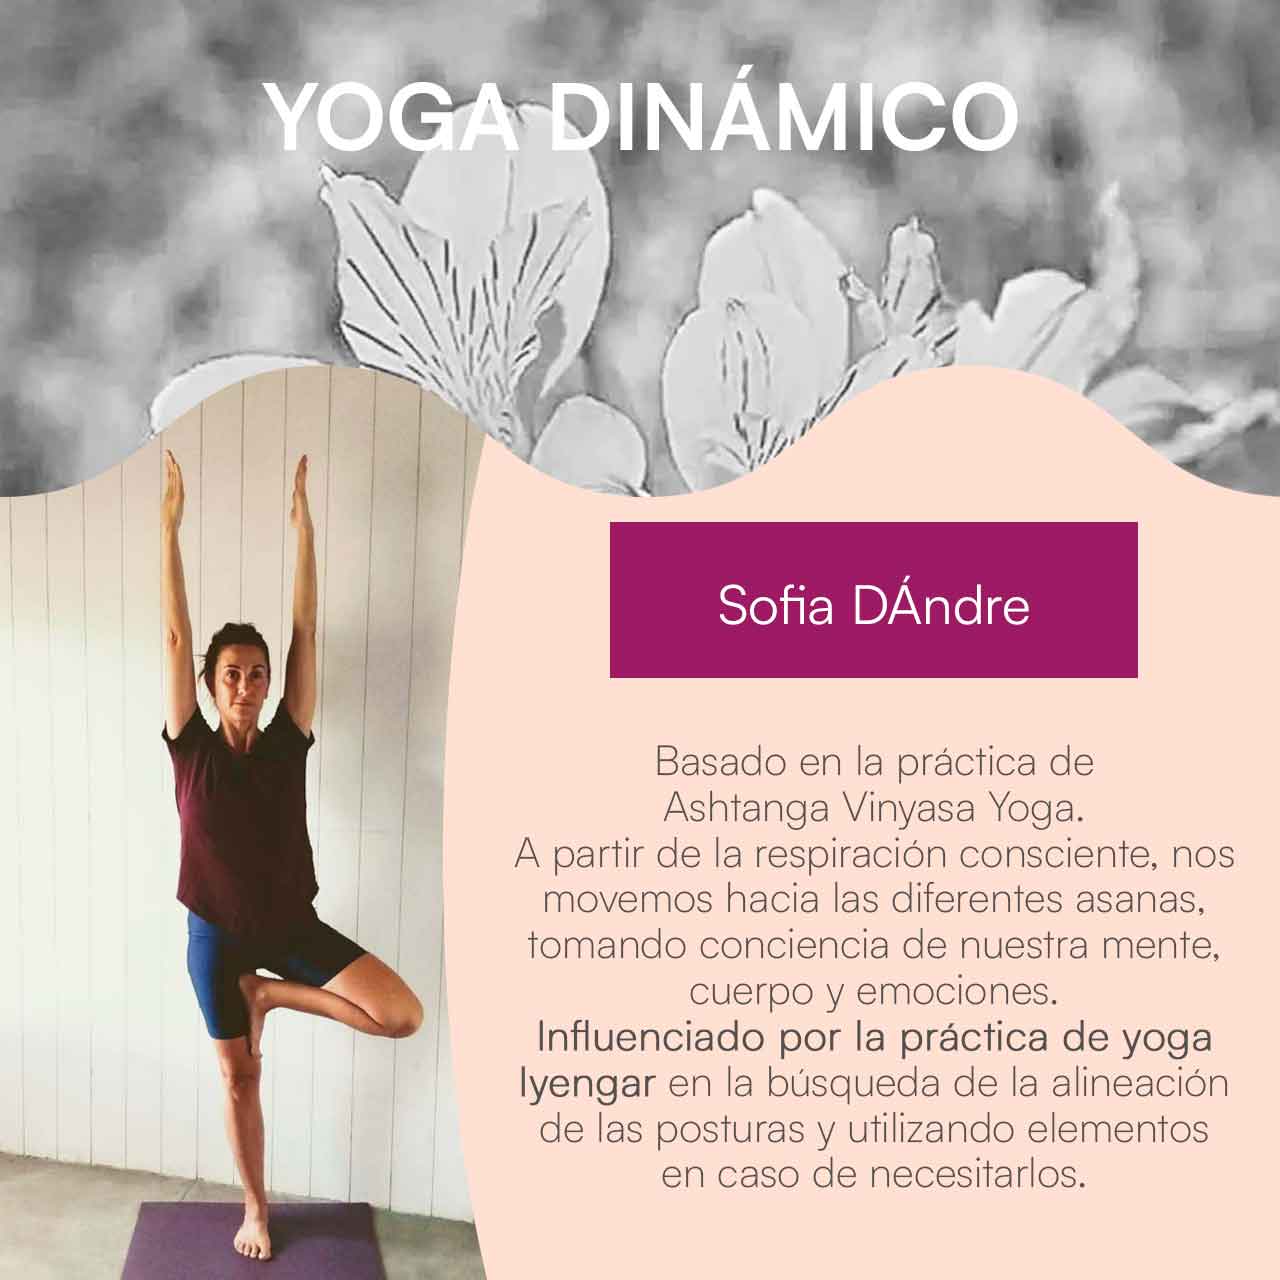 Yoga dinámico con Sofia DÁndre